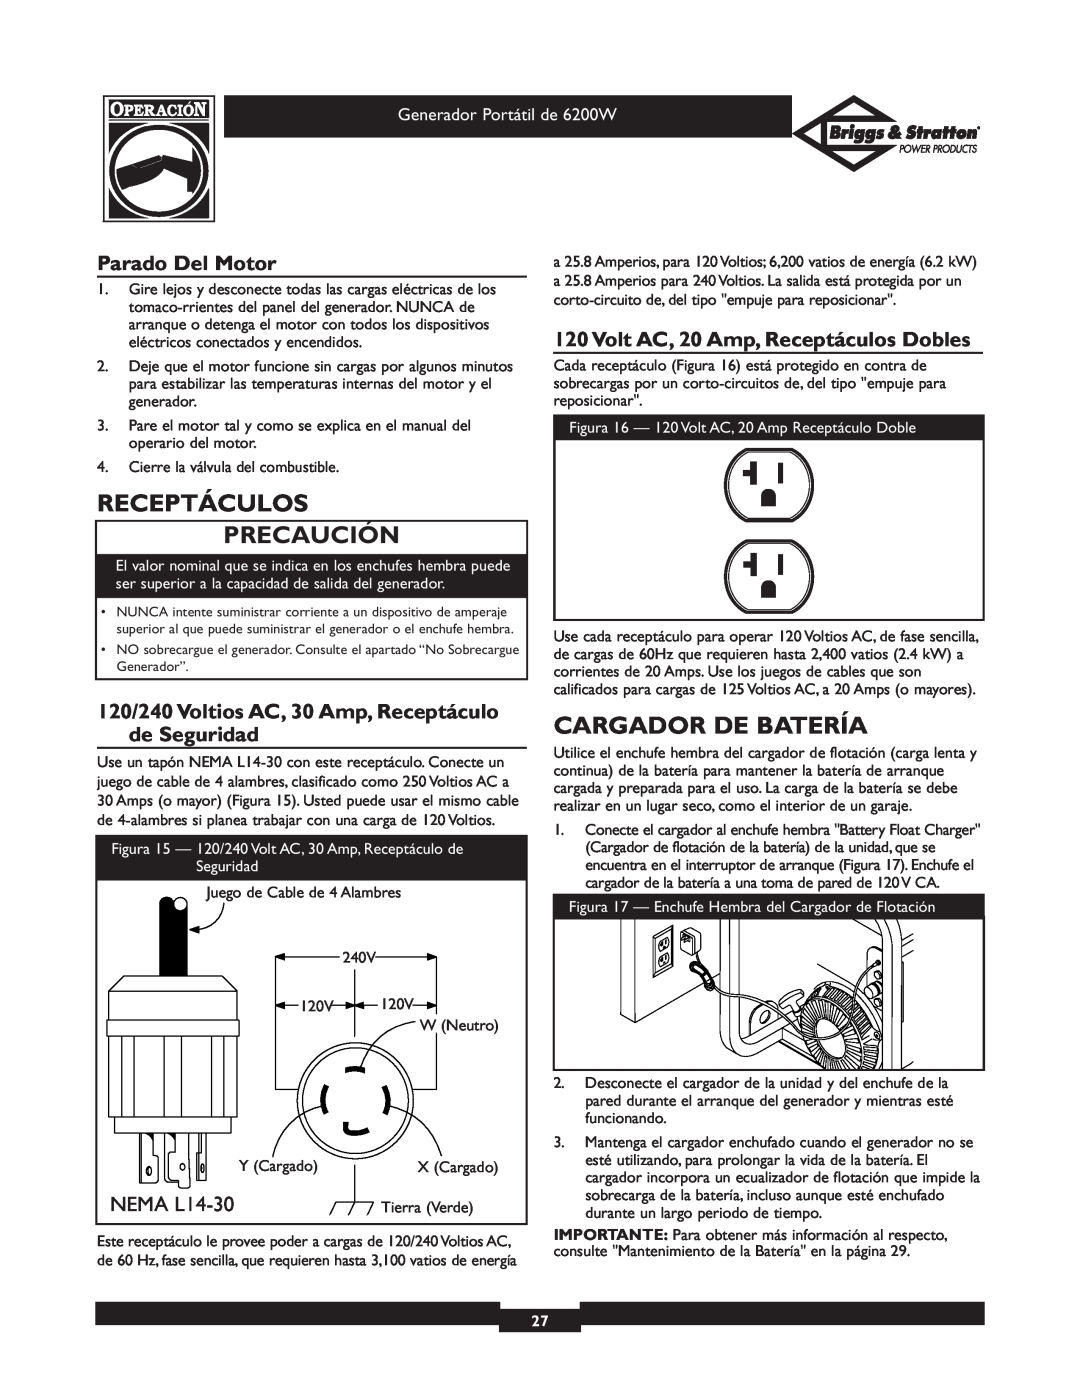 Briggs & Stratton 30211 operating instructions Receptáculos Precaución, Cargador De Batería, Parado Del Motor, NEMA L14-30 